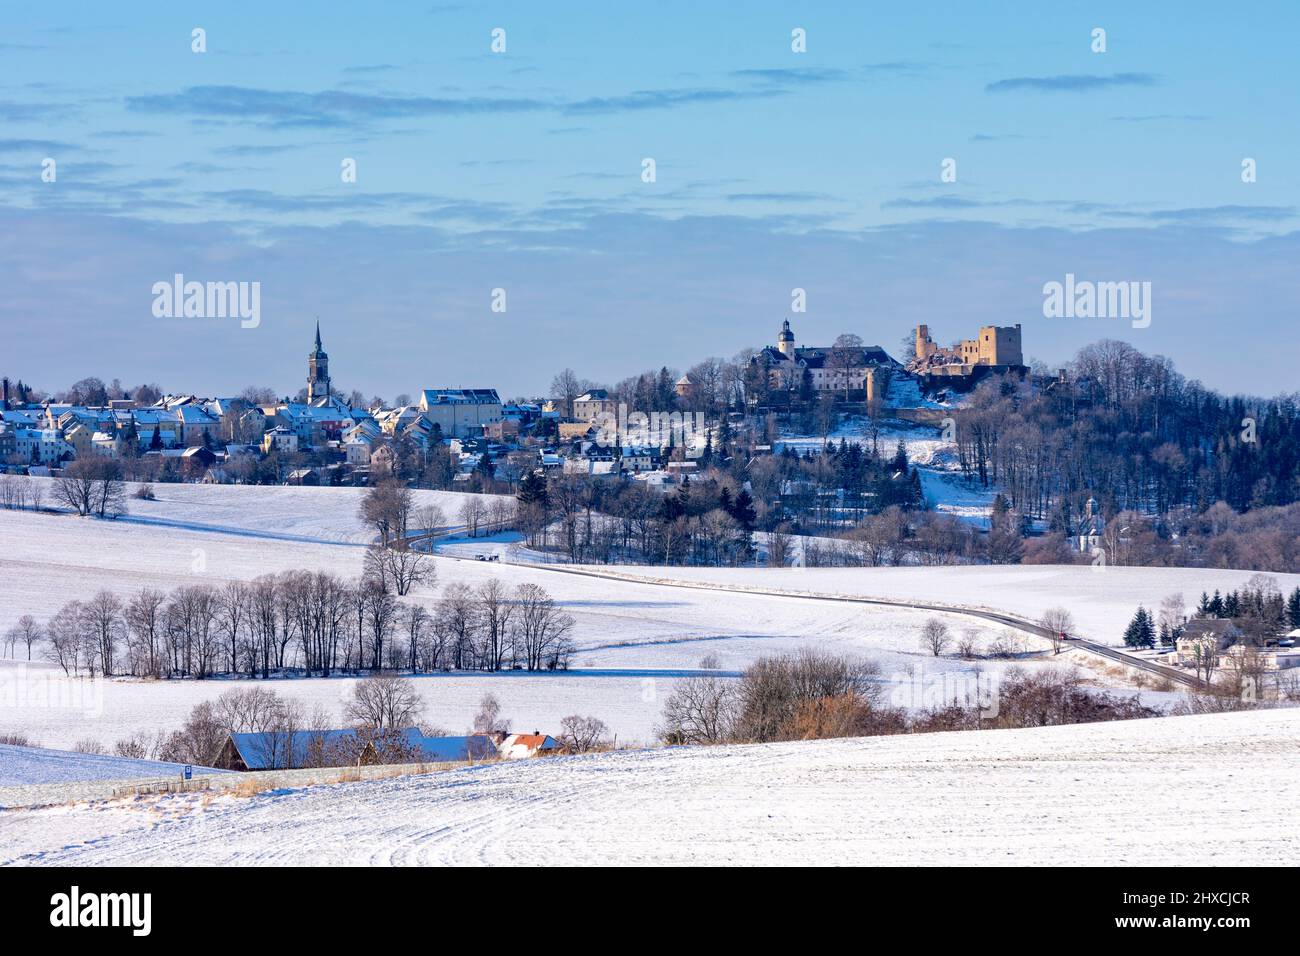 Frauenstein im Schnee, Blick auf Schloss und Kirche, Erzgebirge, Sachsen, Sachsen, Deutschland Stockfoto